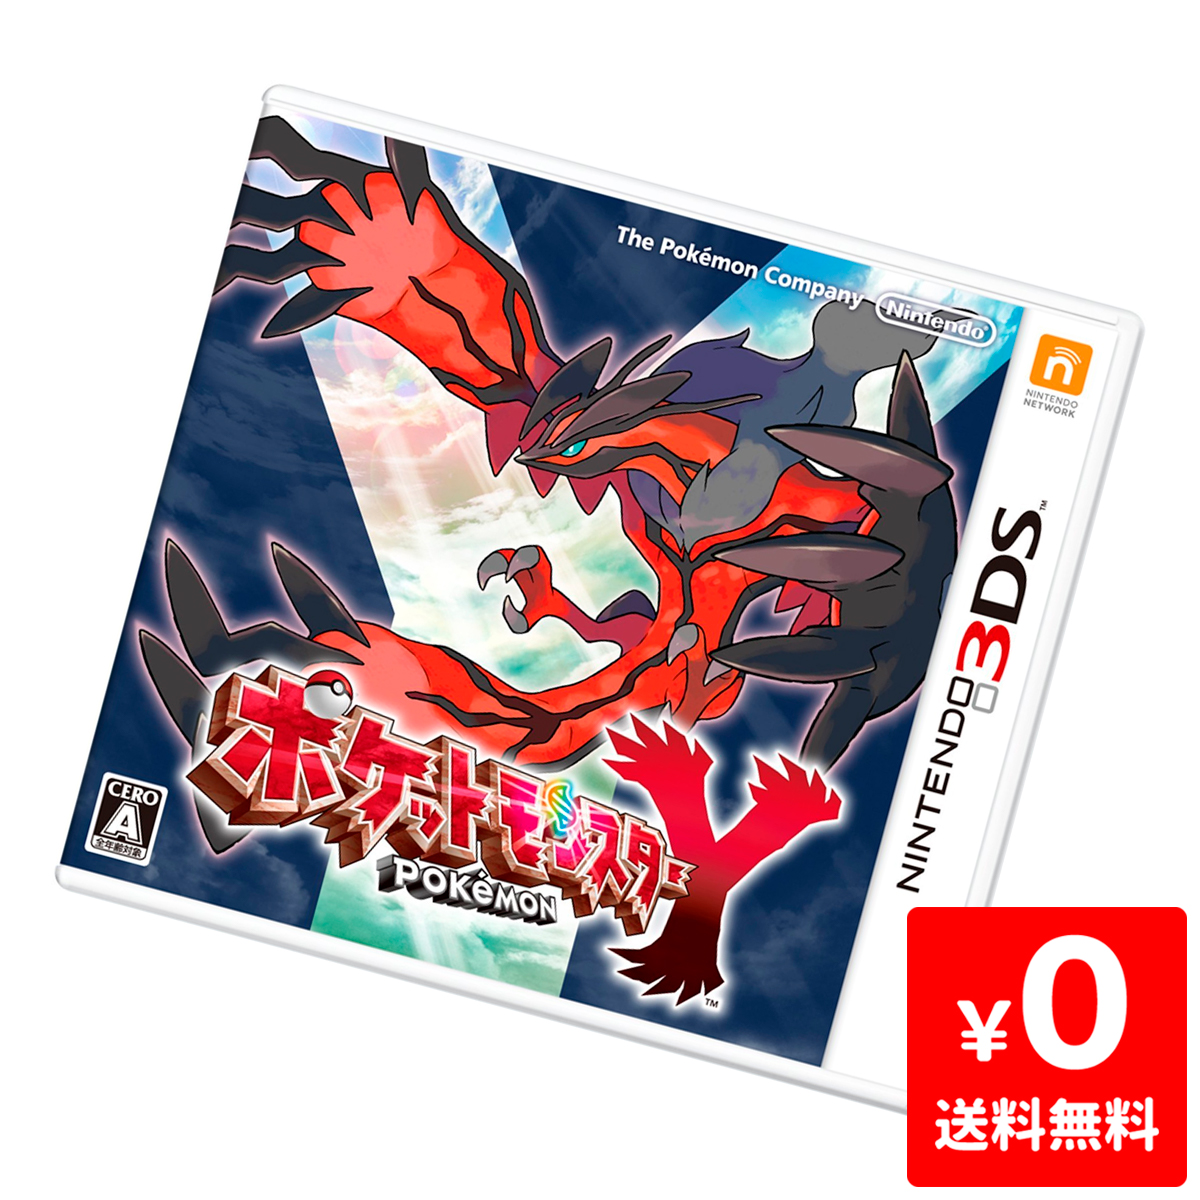 ポケットモンスター Y 3DS - 通販 - nickhealey.co.uk